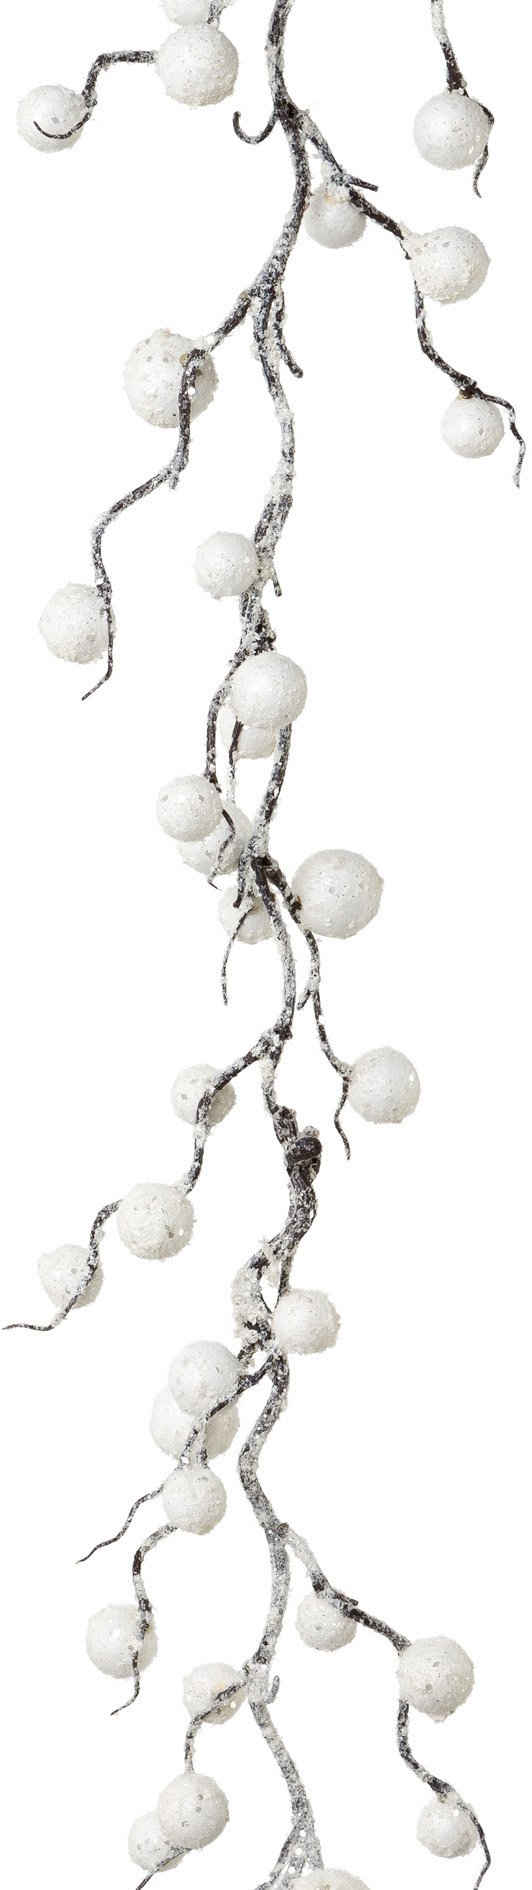 Winterliche Kunstpflanze Weihnachtsdeko, Weihnachtsgirlande Schneekugel, Creativ deco, Girlande in beschneiter Optik, Länge 180 cm